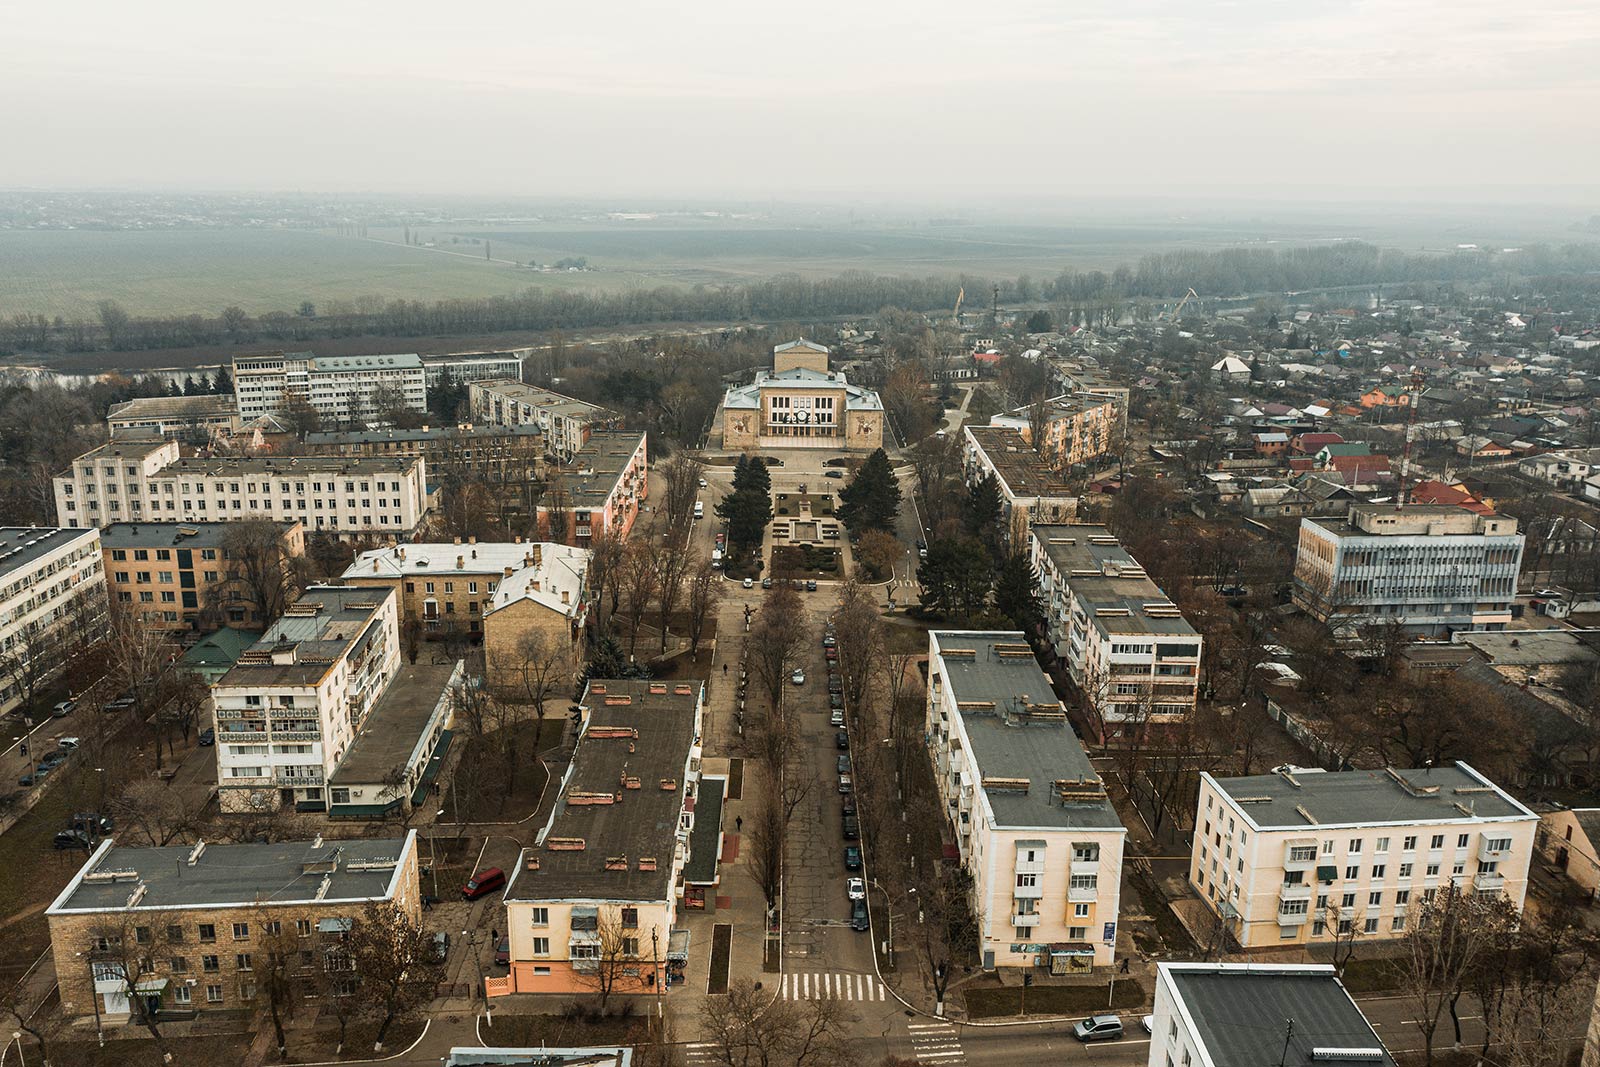 Residential buildings in Tiraspol, Transnistria. A day in Transnistria